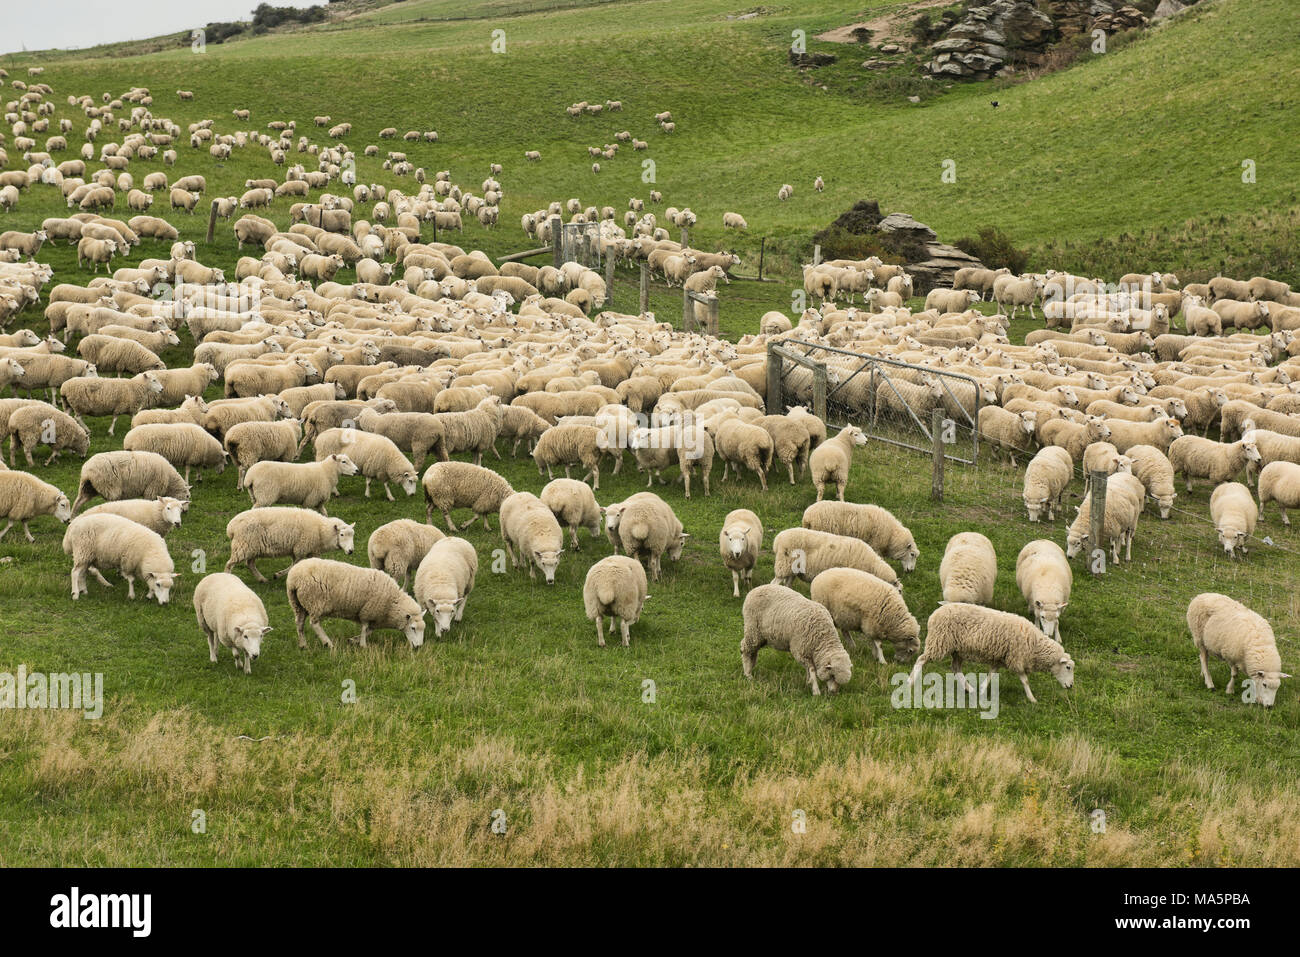 Sheep farm near Wanaka, New Zealand Stock Photo